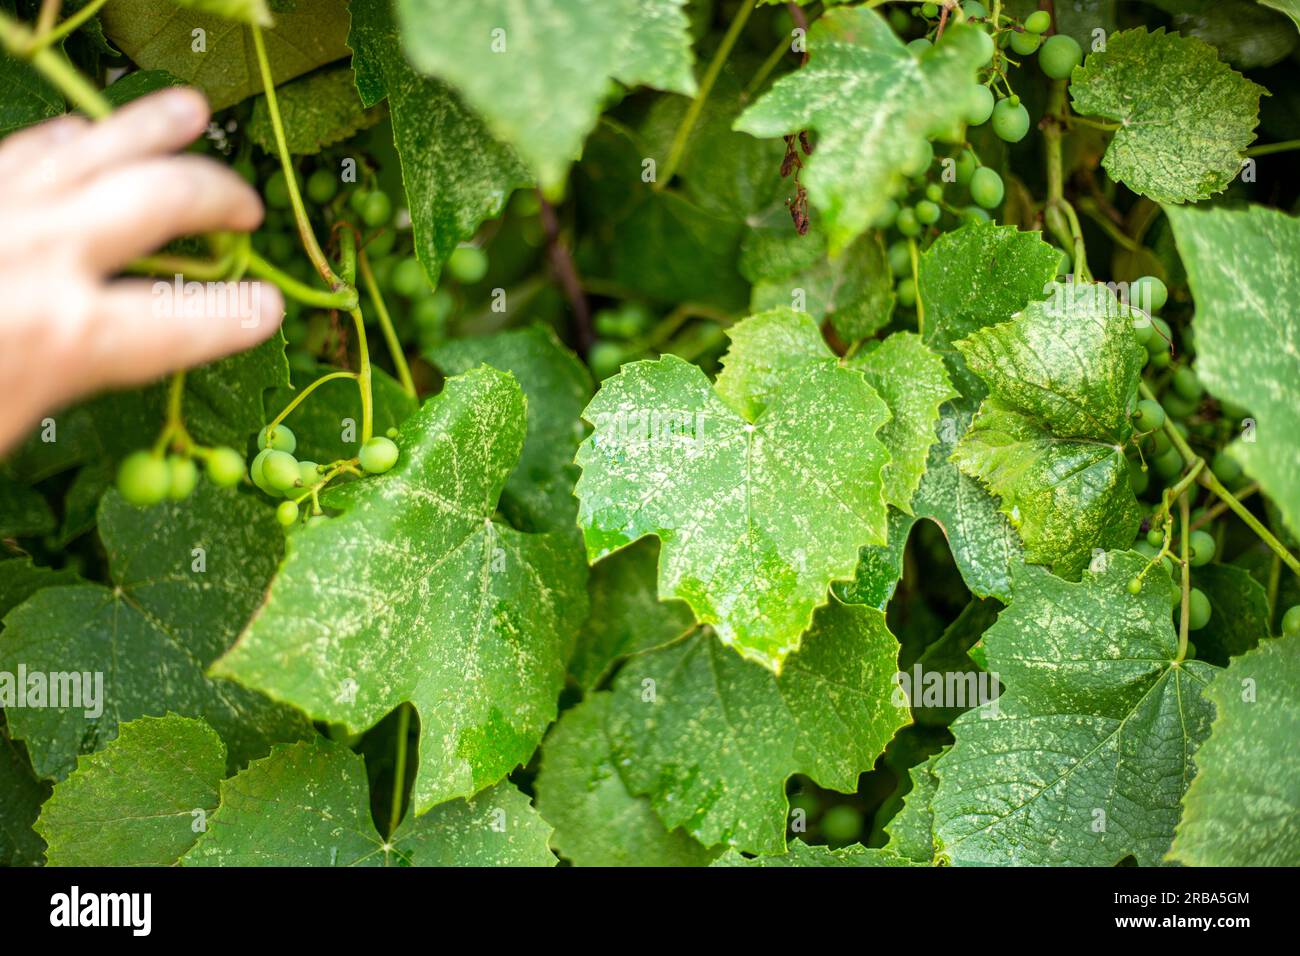 Un giardiniere ispeziona le foglie di un'uva malata, affetta da insetti parassiti. Prevenzione delle malattie dell'uva da infezioni fungine e insetti Foto Stock